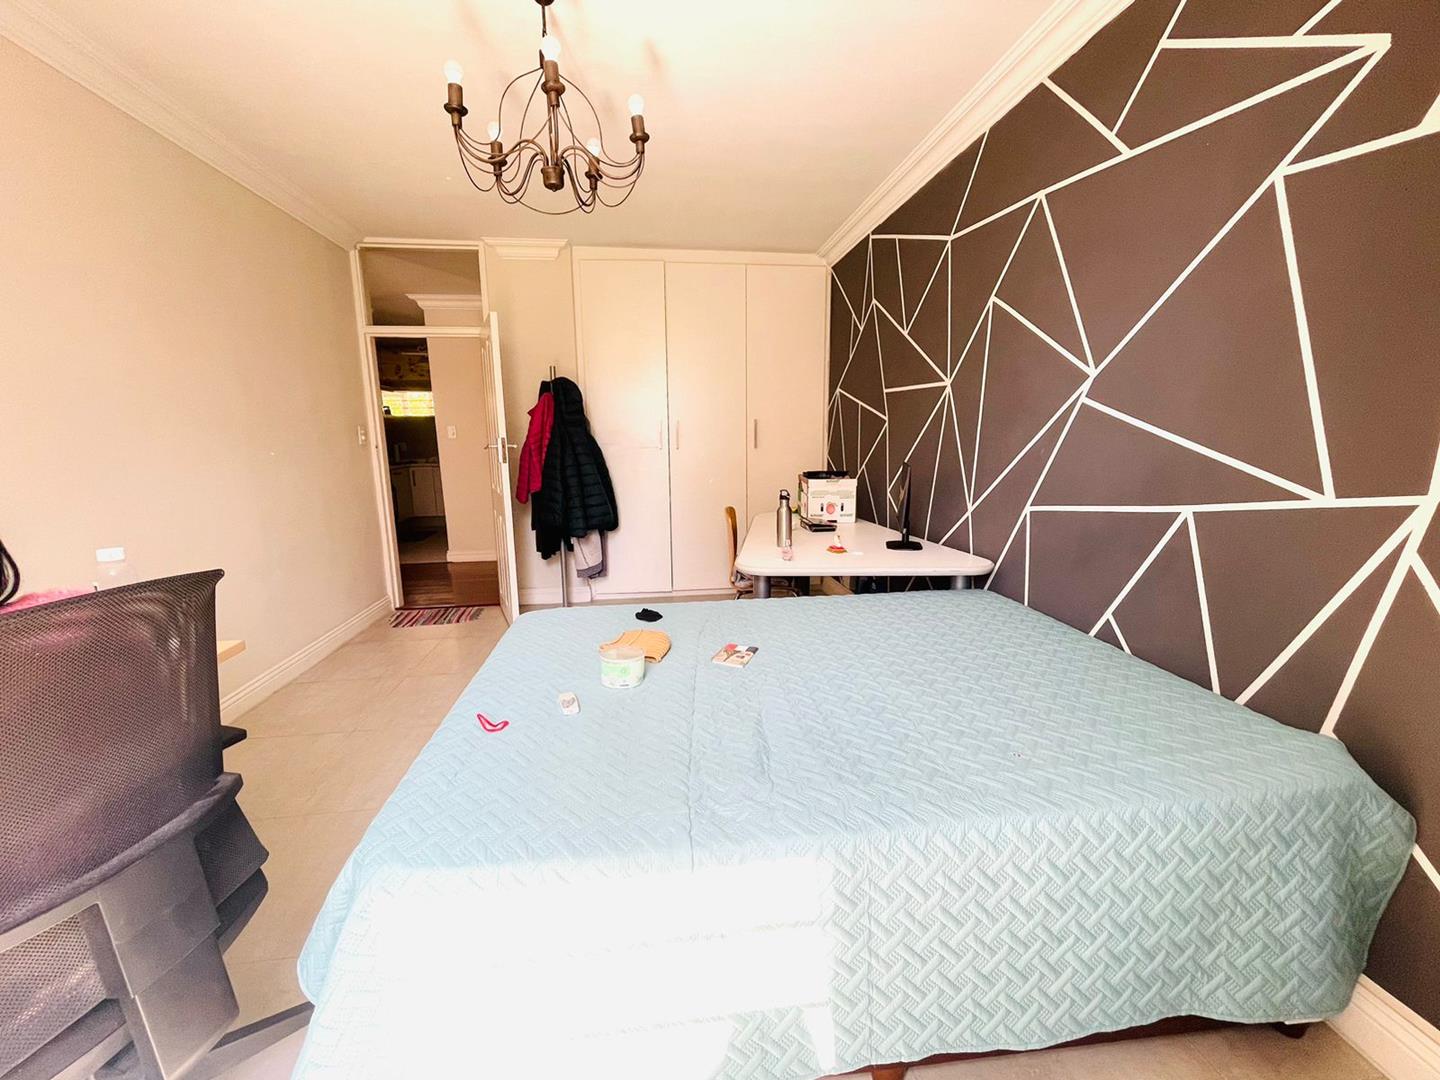 3 Bedroom Property for Sale in Benmore Gardens Gauteng